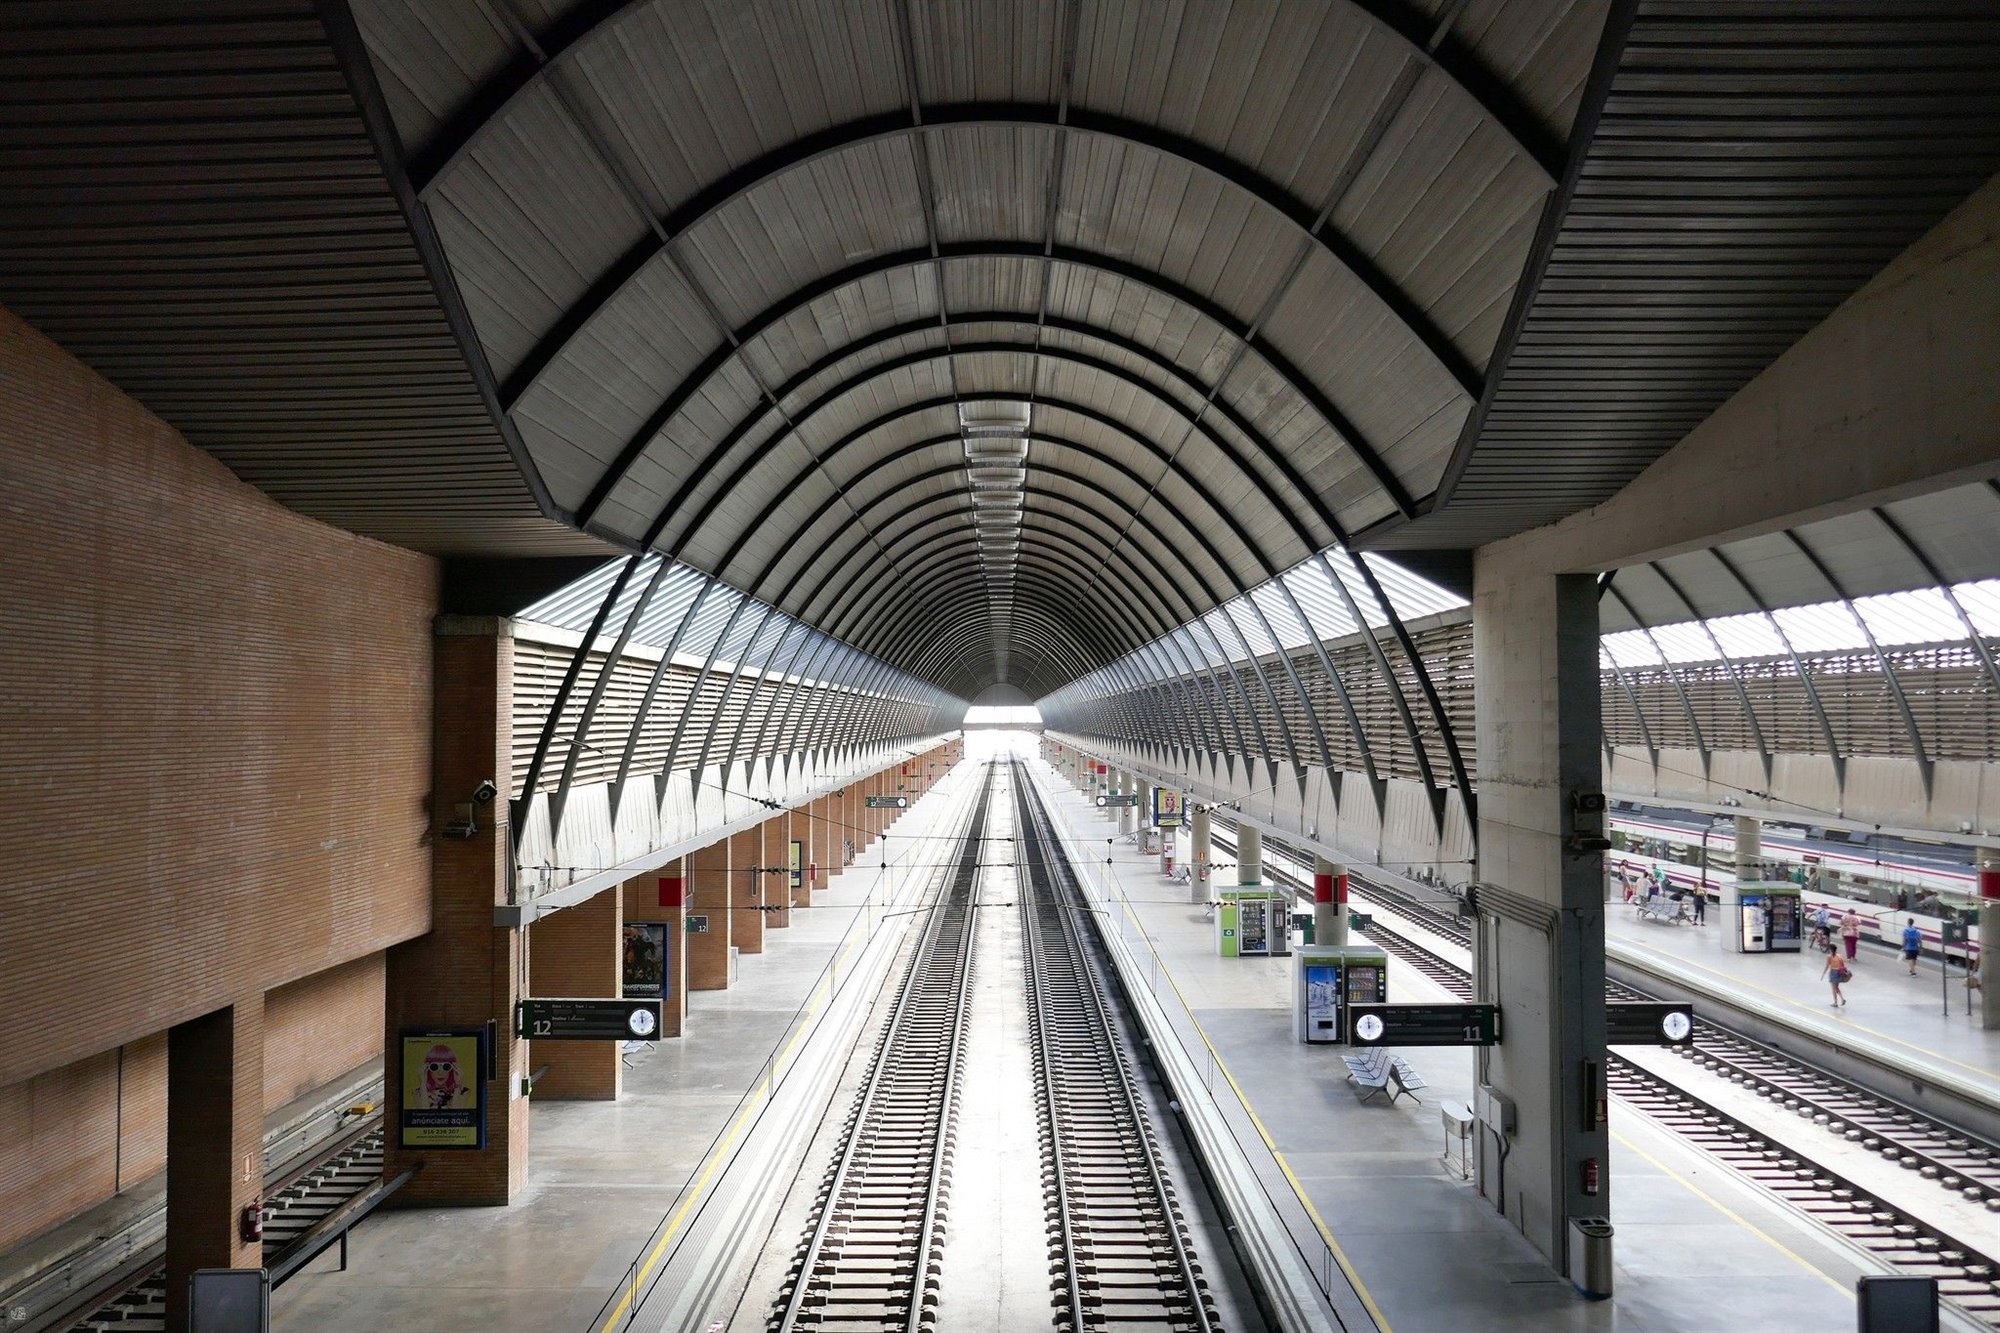 10 Estación de Santa Justa de Cruz y Ortiz en Sevilla